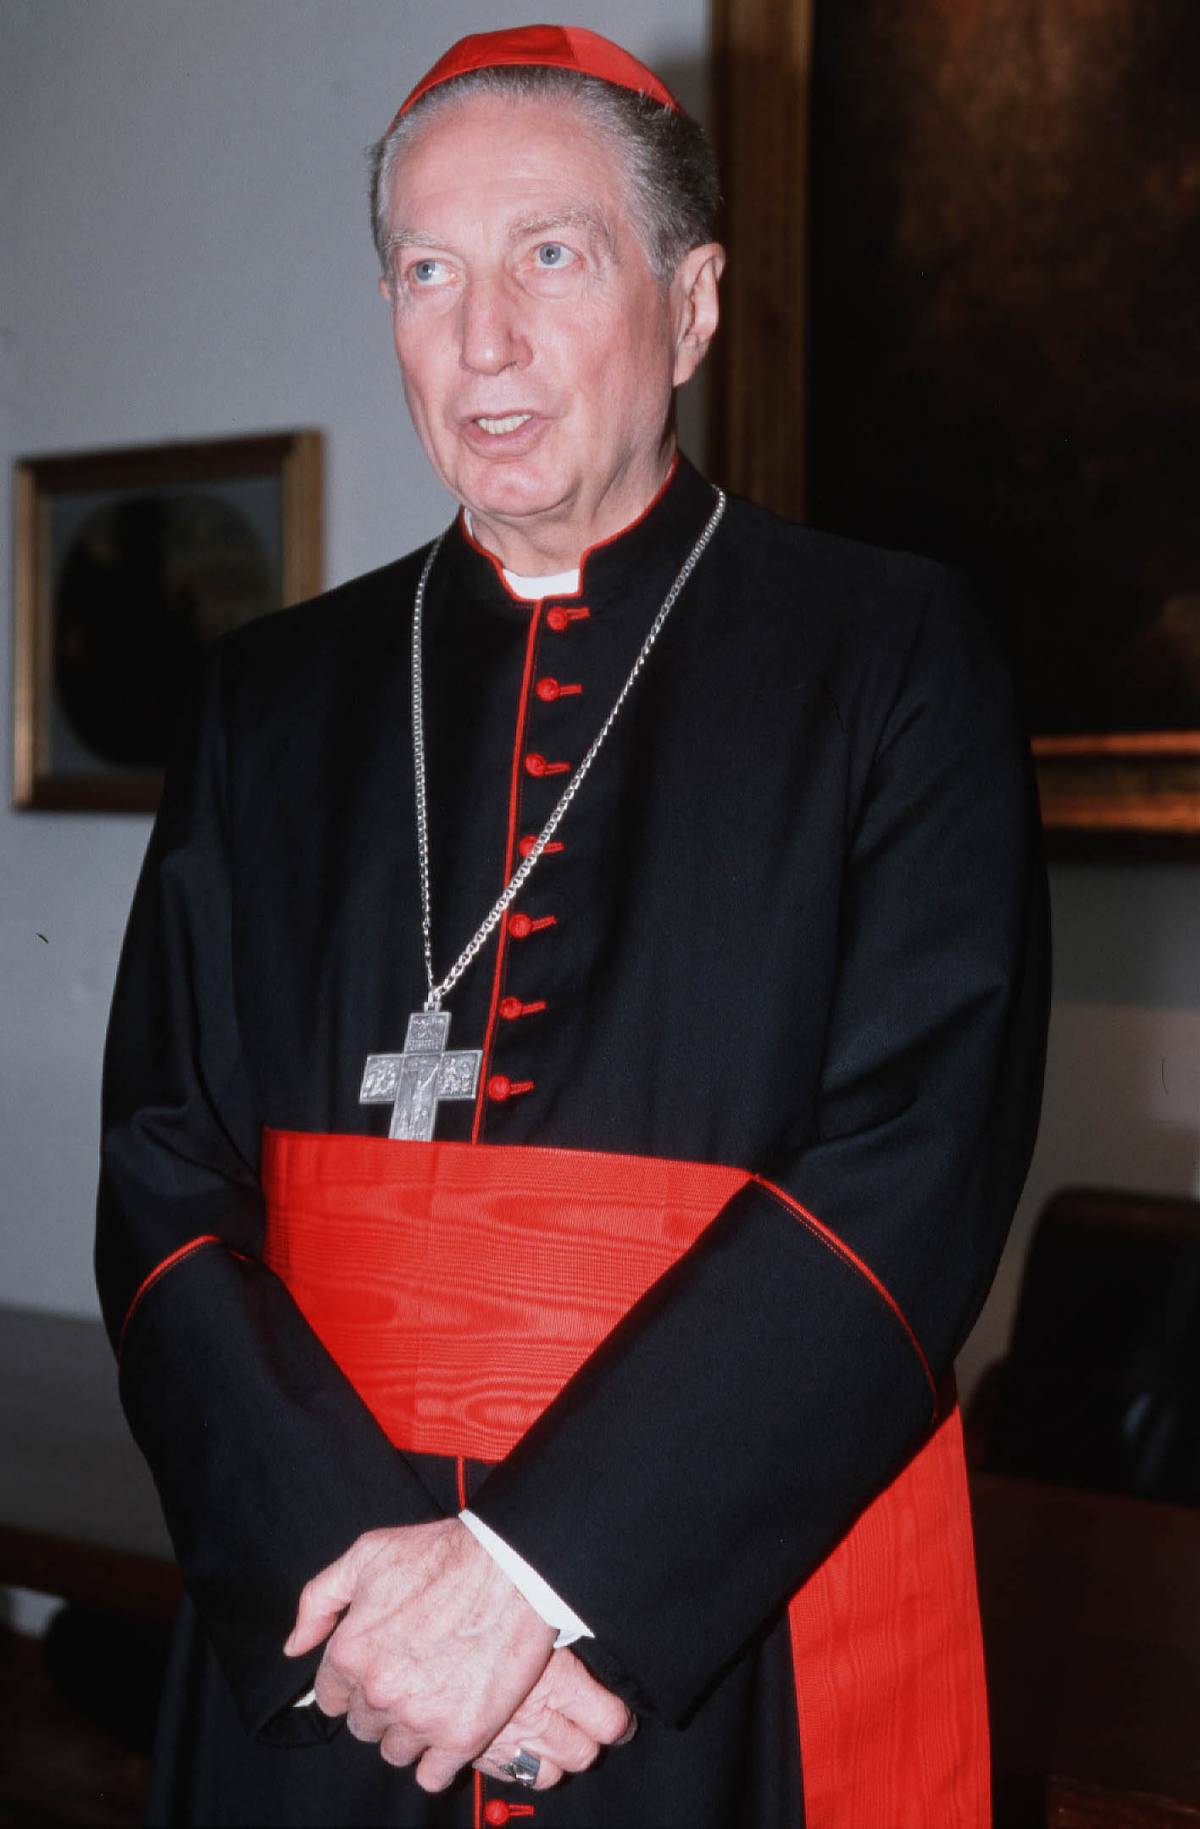 Dibattito sulla scuola, parla Martini 
Il cardinale: "No al monopolio statale"